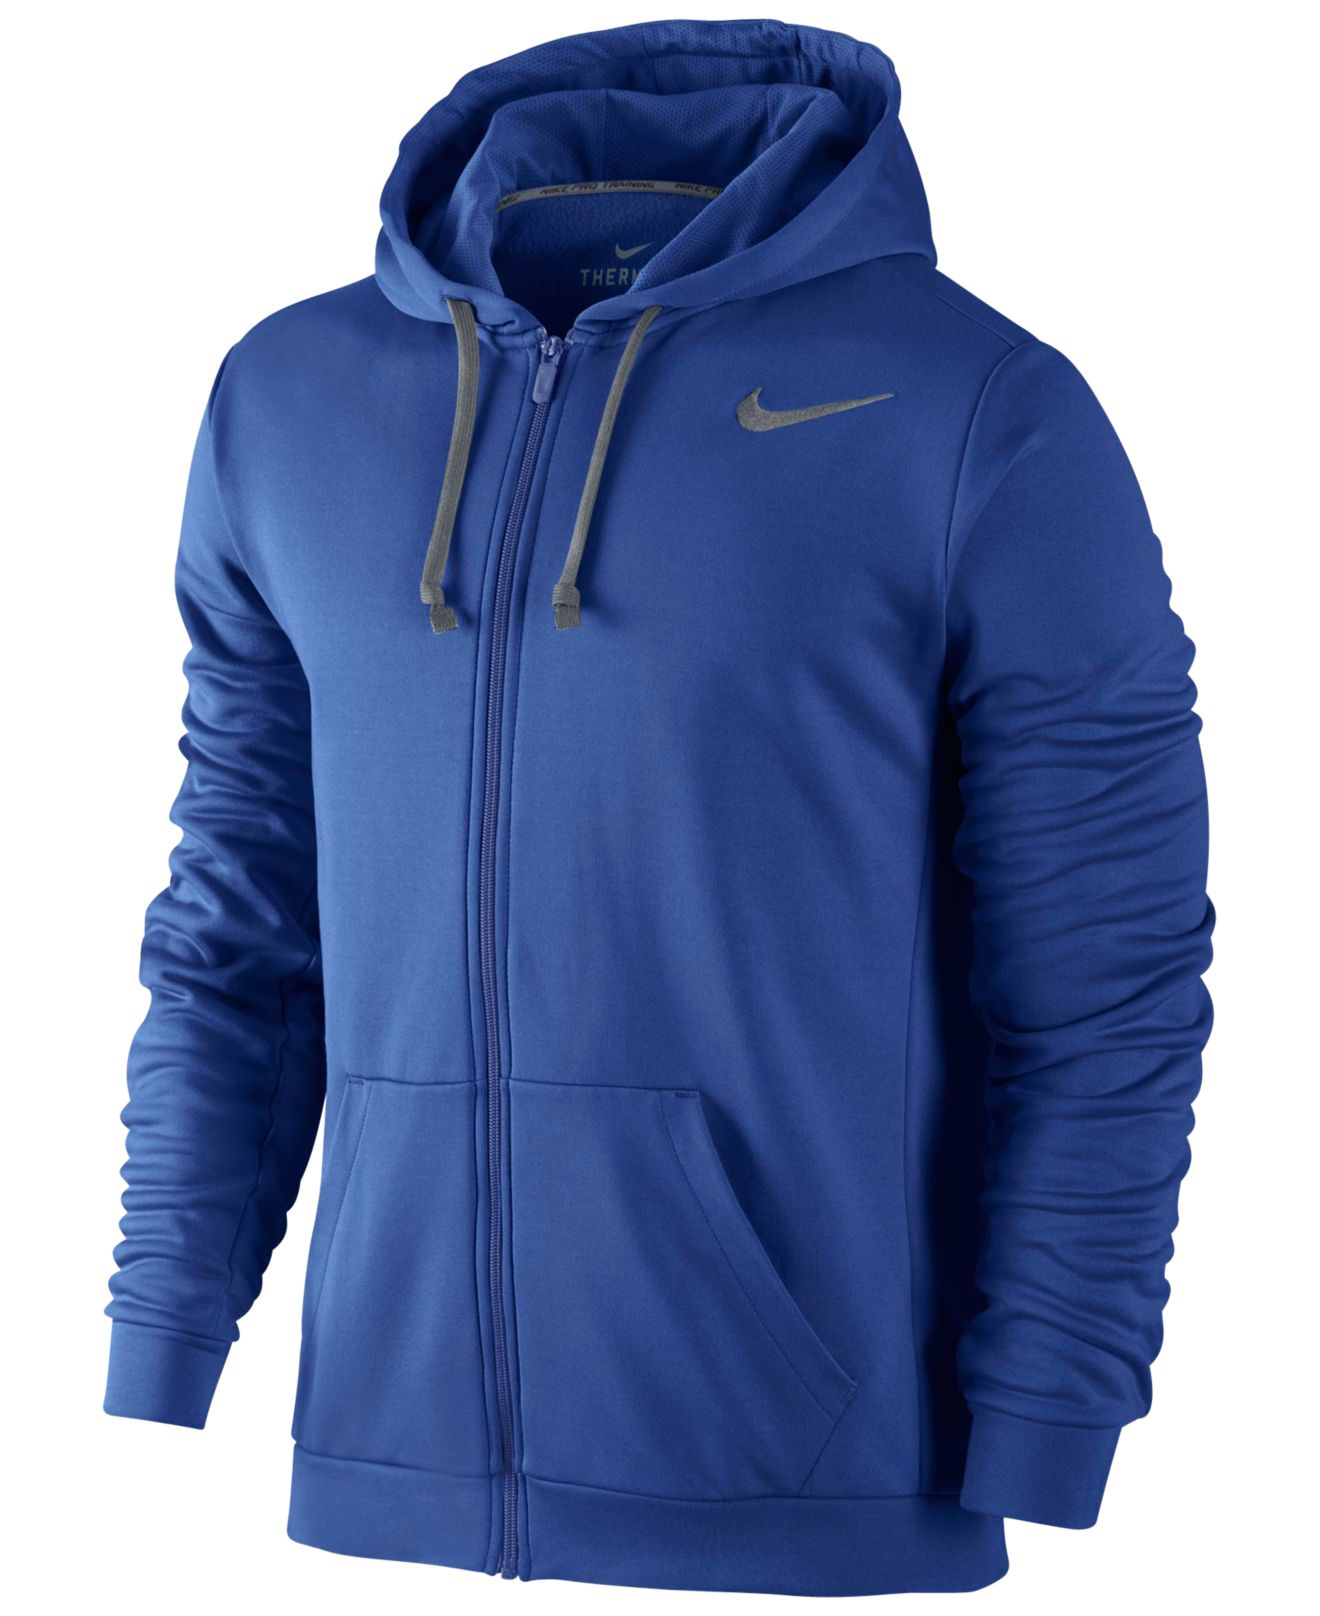 Nike Ko 3.0 Therma-fit Full-zip Hoodie in Blue for Men - Lyst